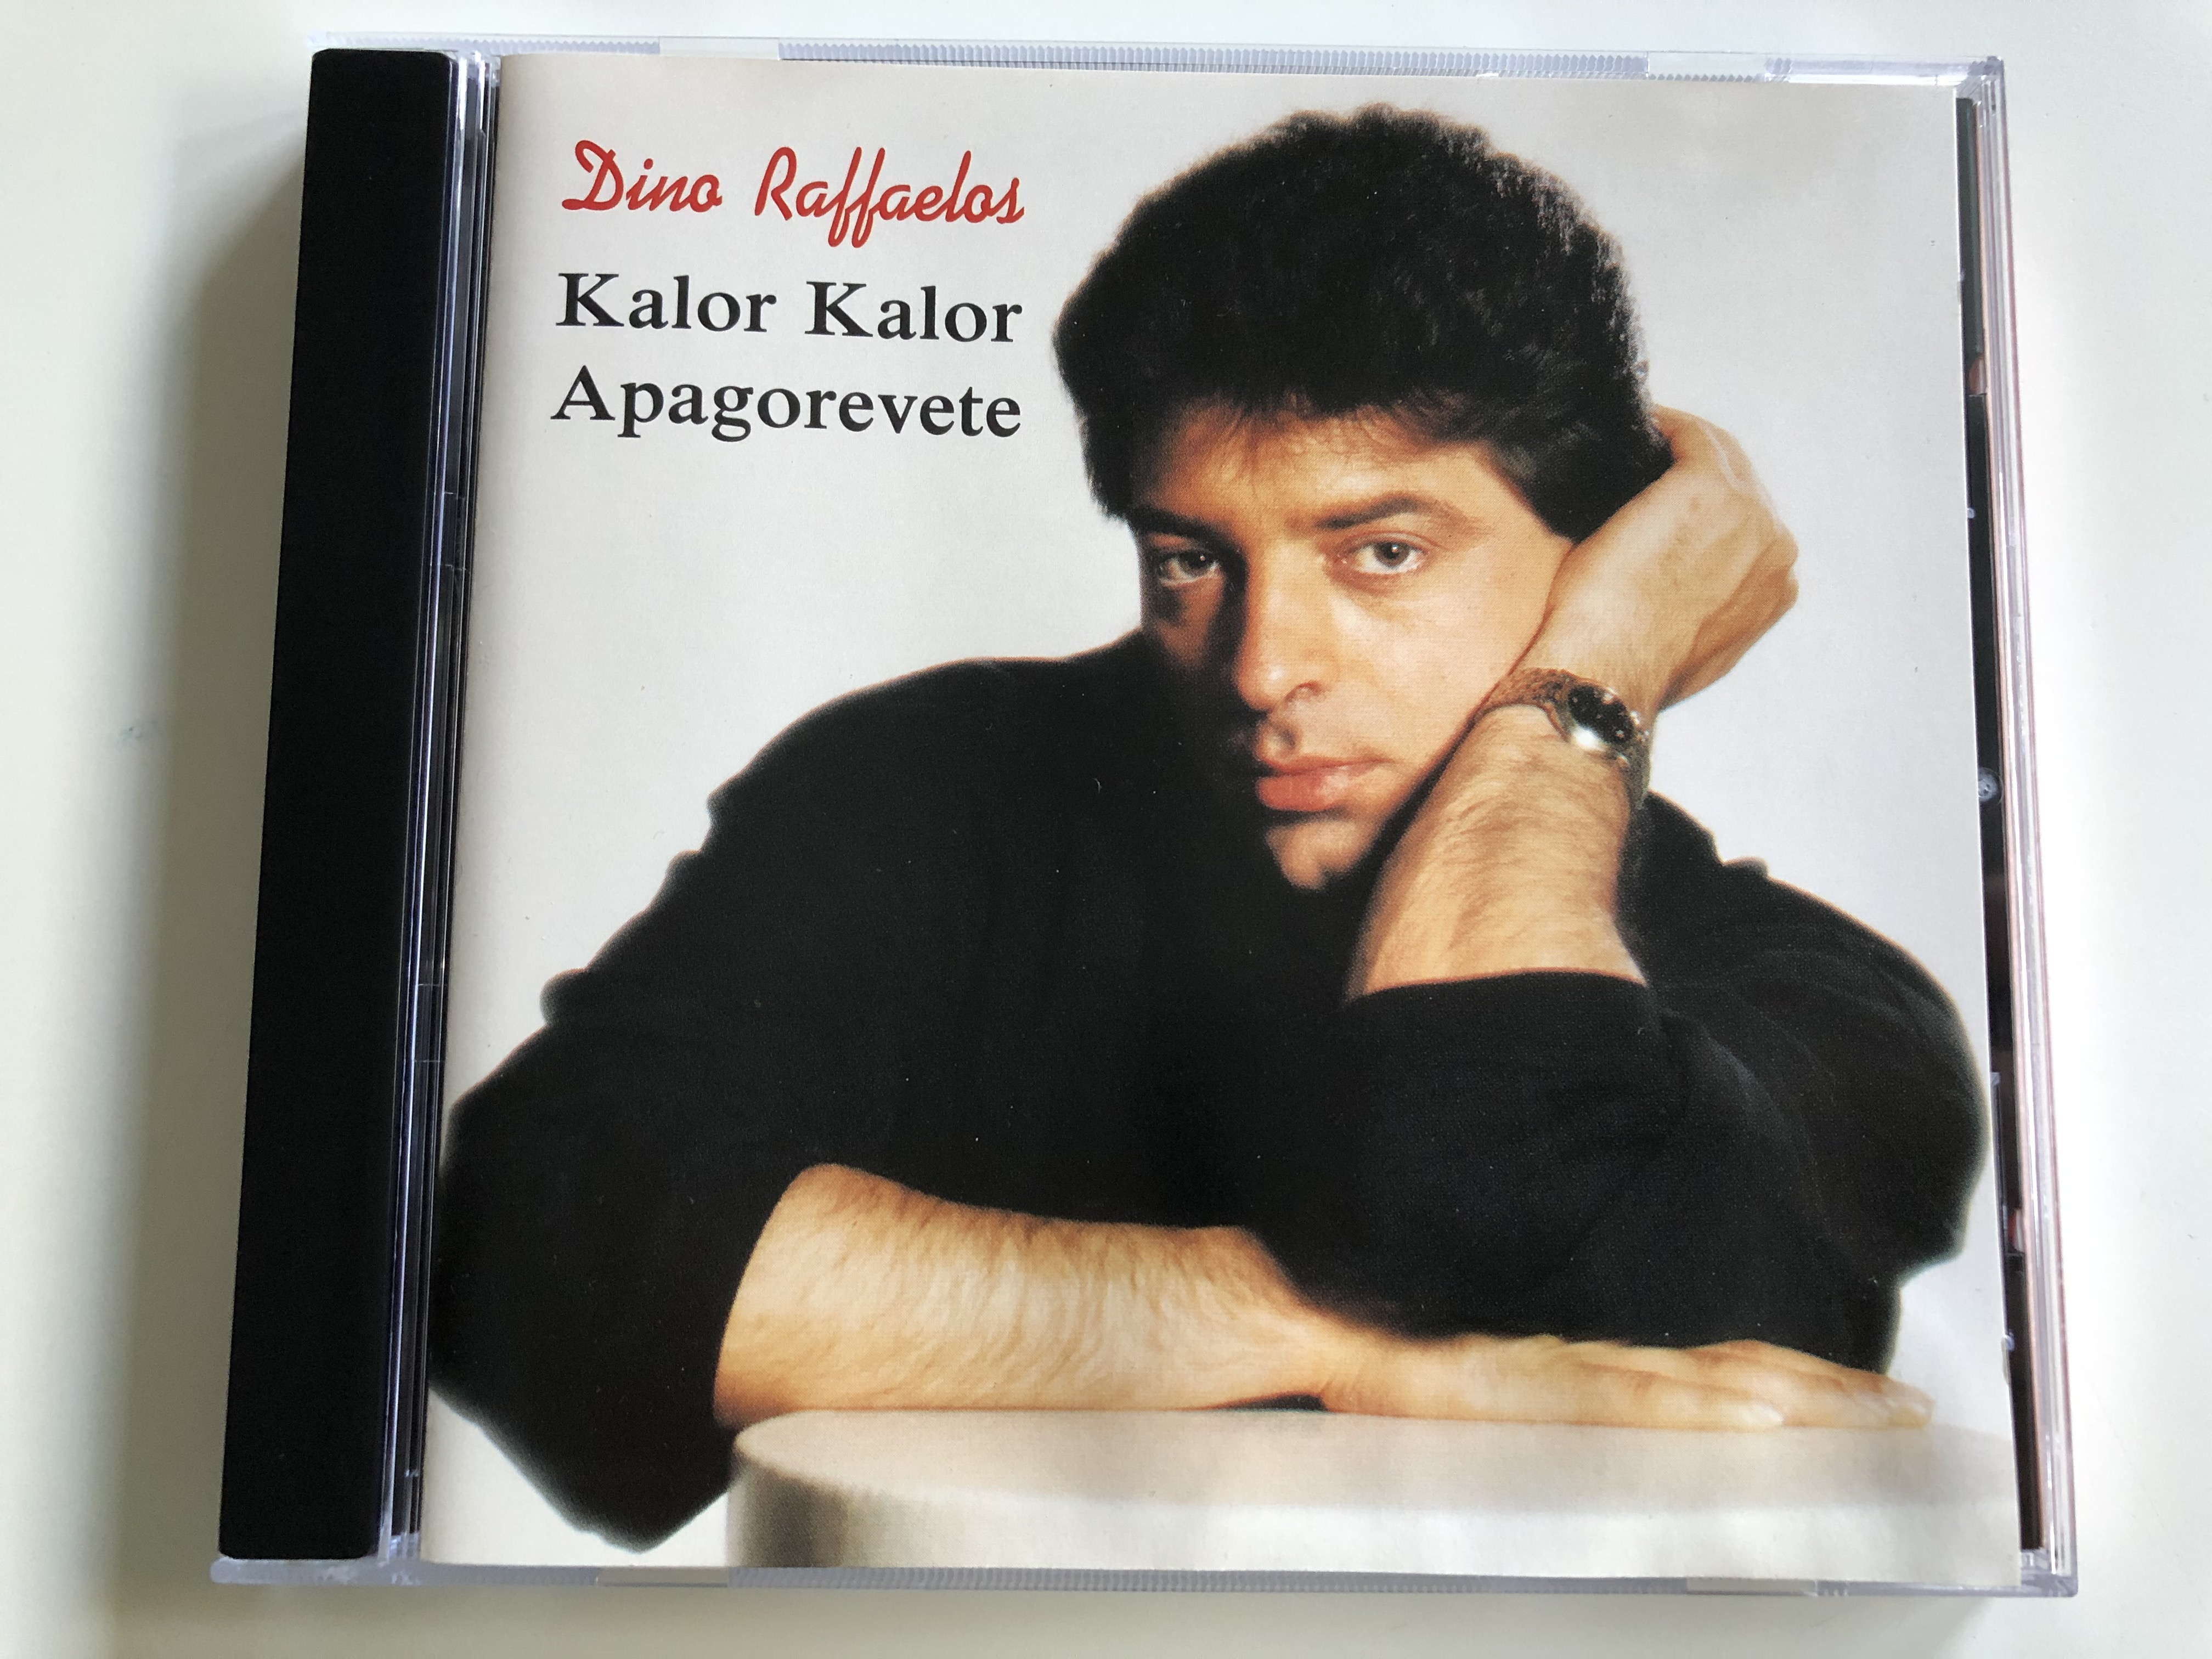 dino-raffaelos-kalor-kalor-apagorevete-life-records-audio-cd-stereo-cd-450-1-.jpg